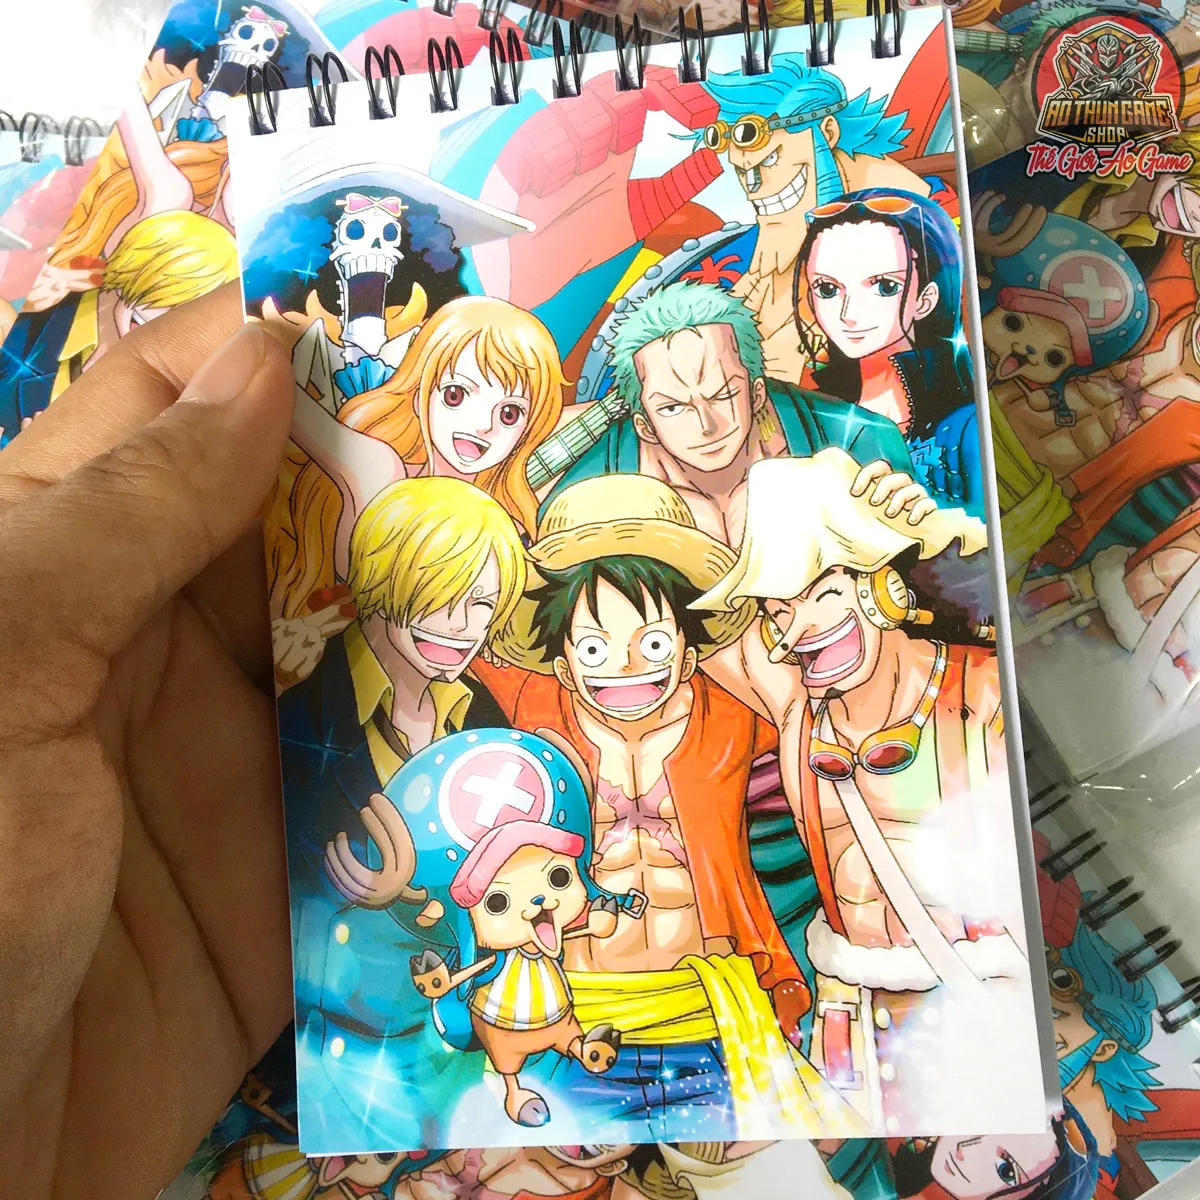 Sổ tay của Nhóm Luffy là nơi các nhân vật trong One Piece ghi chép lại cuộc phiêu lưu của họ. Sổ tay bao gồm các chi tiết về nhân vật Mũ Rơm, Zoro, Sanji, Usopp, Chopper và các nhân vật khác. Qua hình ảnh này, hãy cùng khám phá cuộc hành trình của Nhóm Luffy và tham gia vào cuộc phiêu lưu đầy kích thích này.